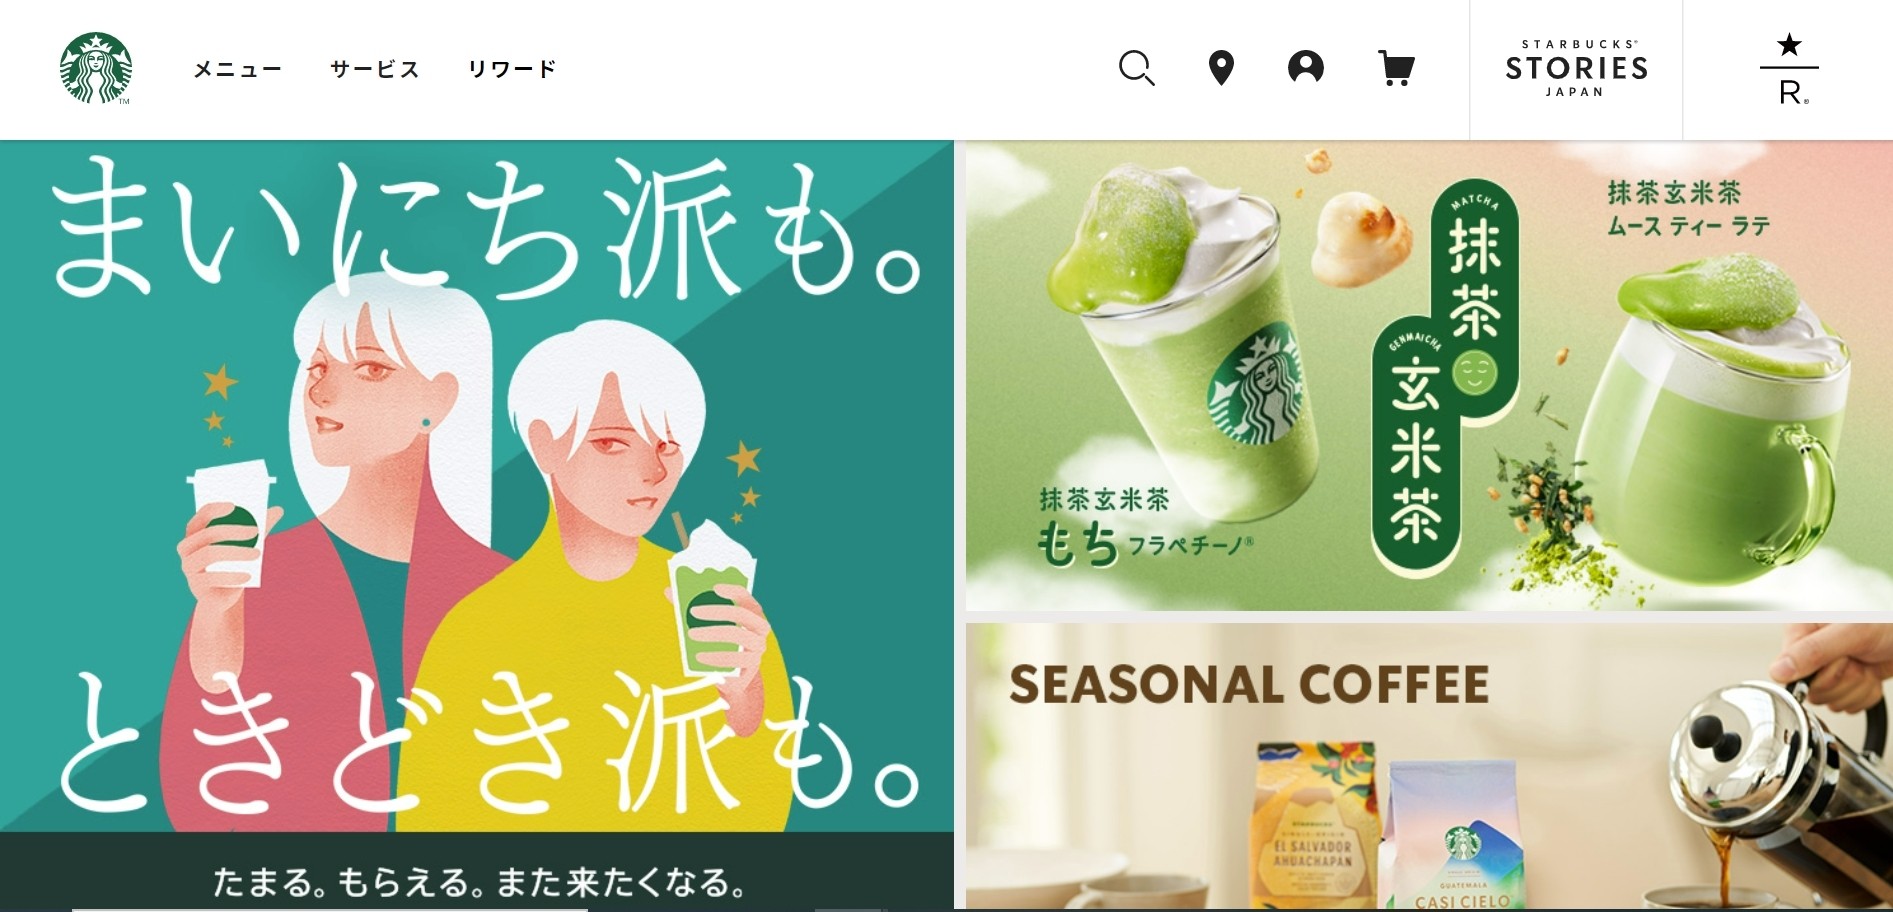 顧客価値向上・創造の事例　スターバックス コーヒー ジャパン